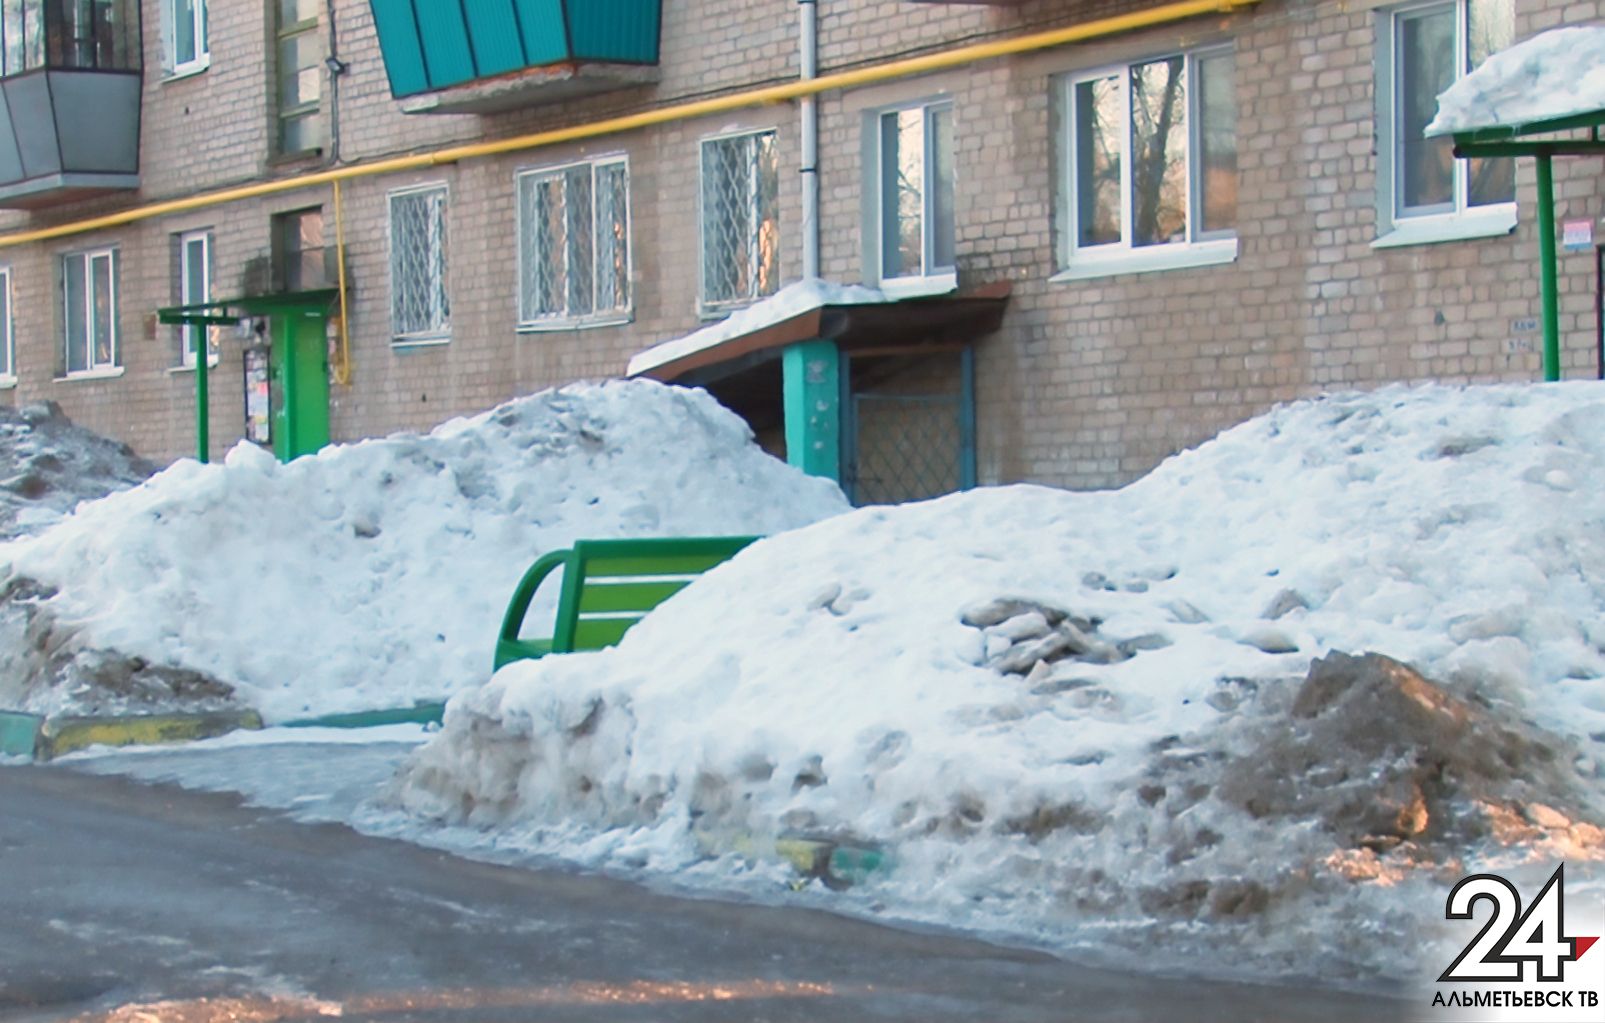 Альметьевцы пожаловались на снег, наледи и работу автобусов в «Народный контроль»